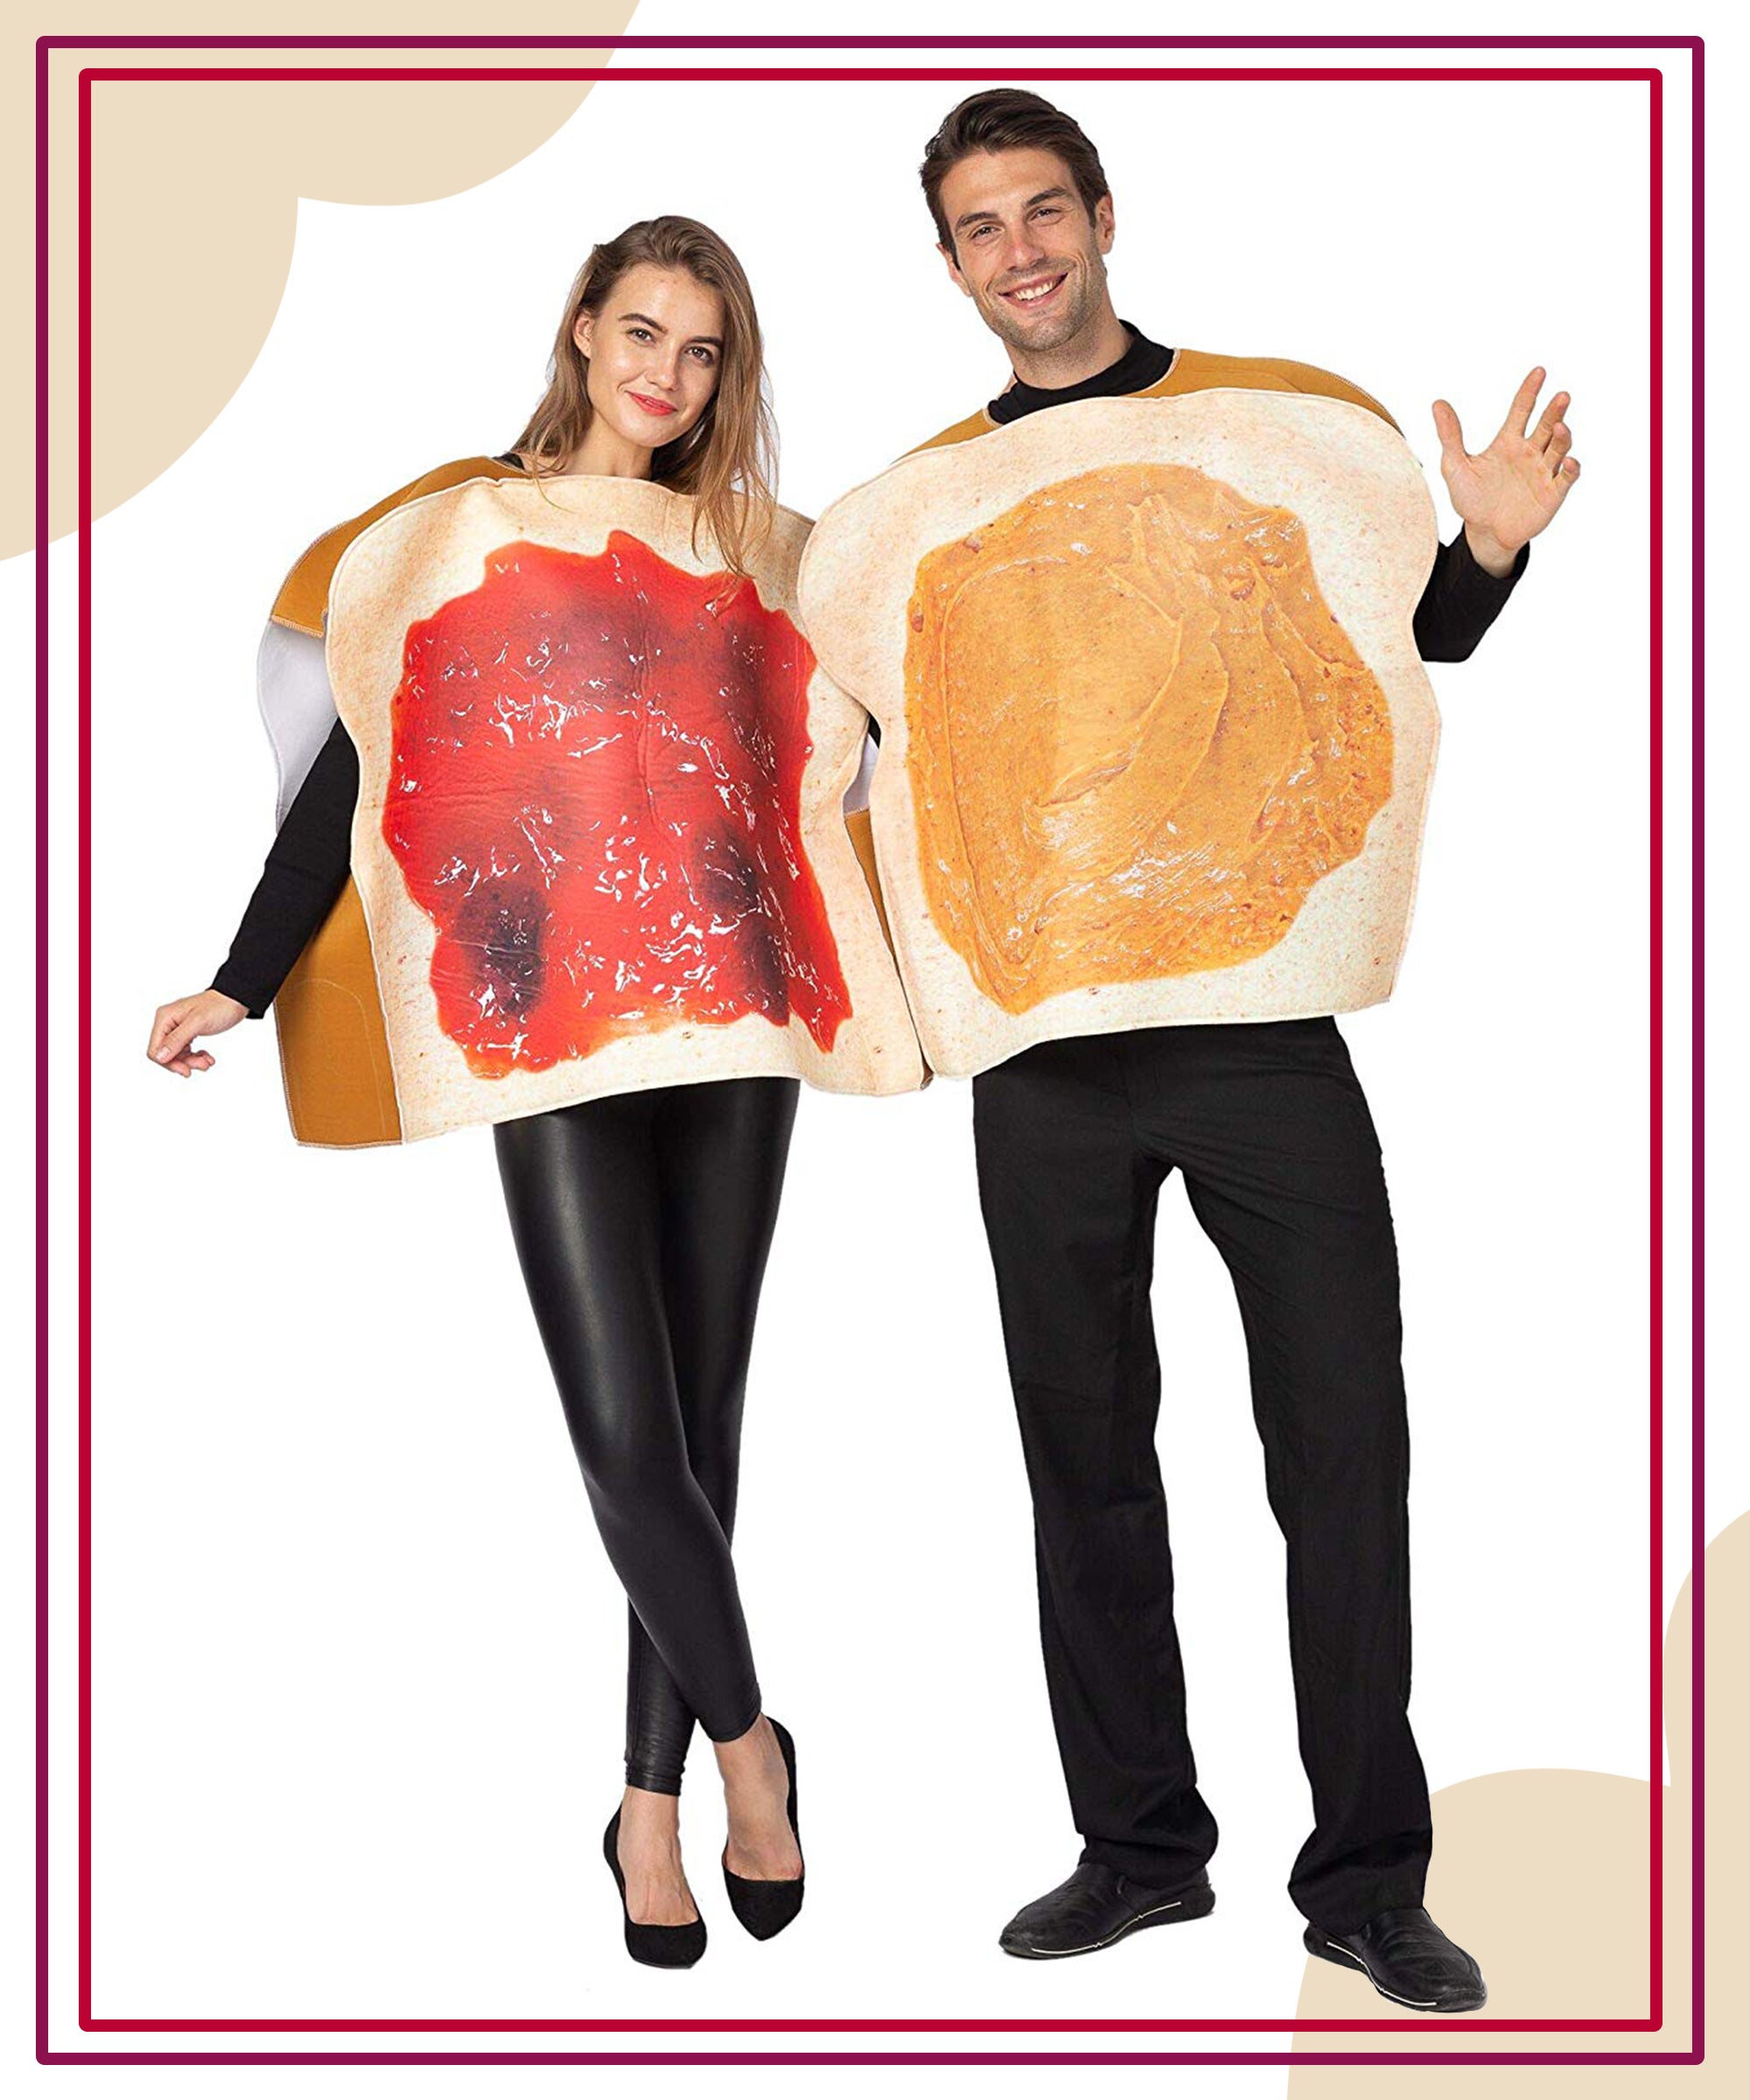 GI Joe & GI Jane couple costumes perfect for Halloween!  Couples costumes,  Couple halloween costumes, Couples halloween outfits